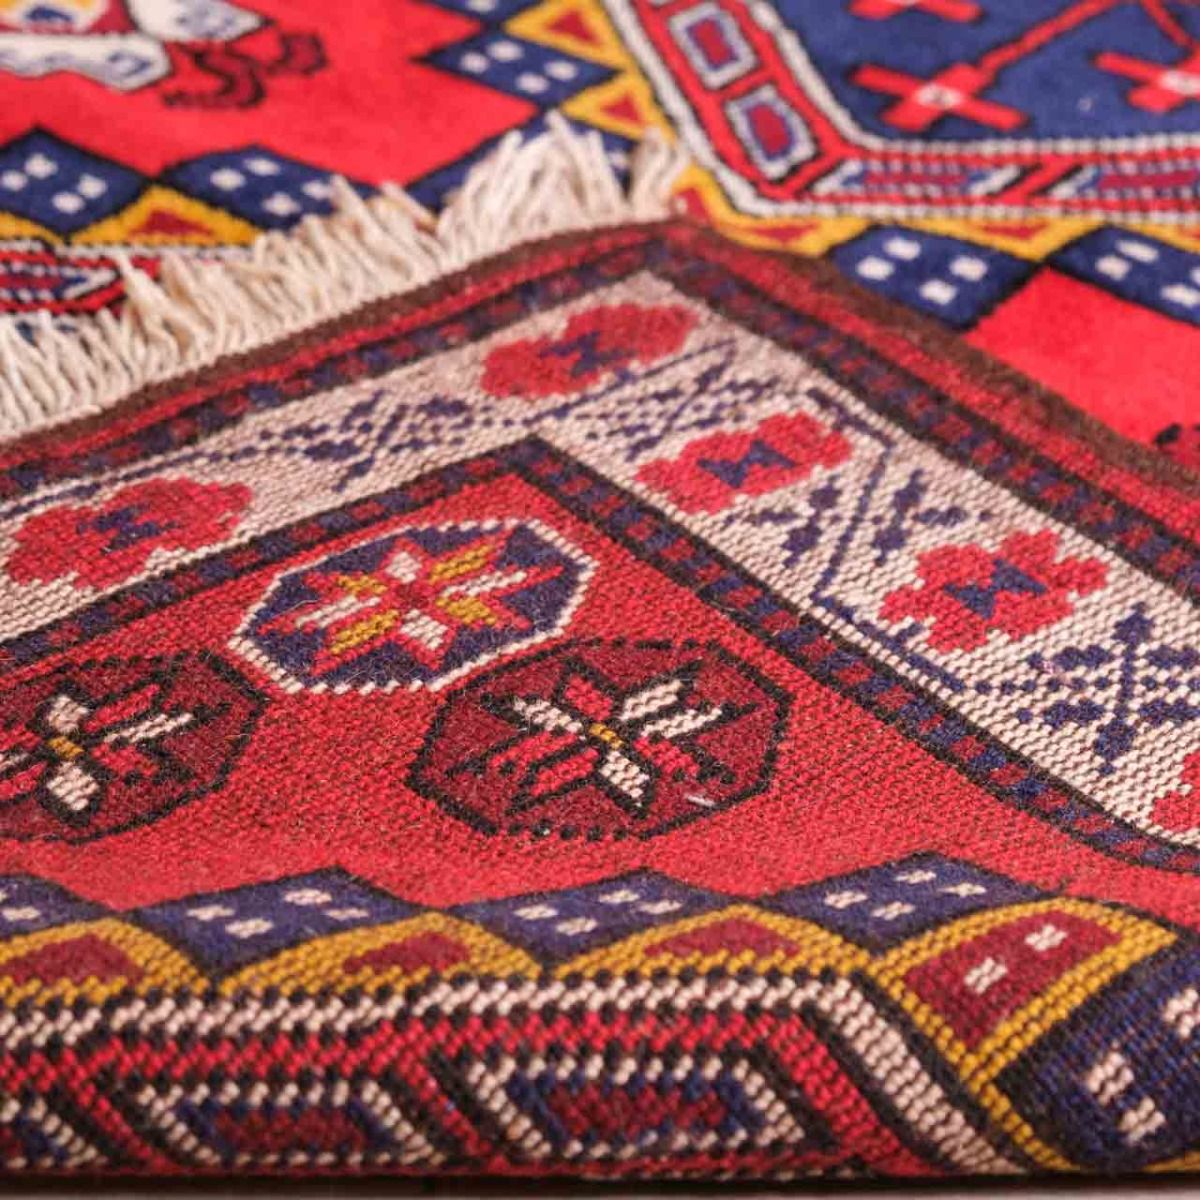 Hand Woven Carpet,Vintage Rug,Retro Carpet,Retro Rug,Red Rug